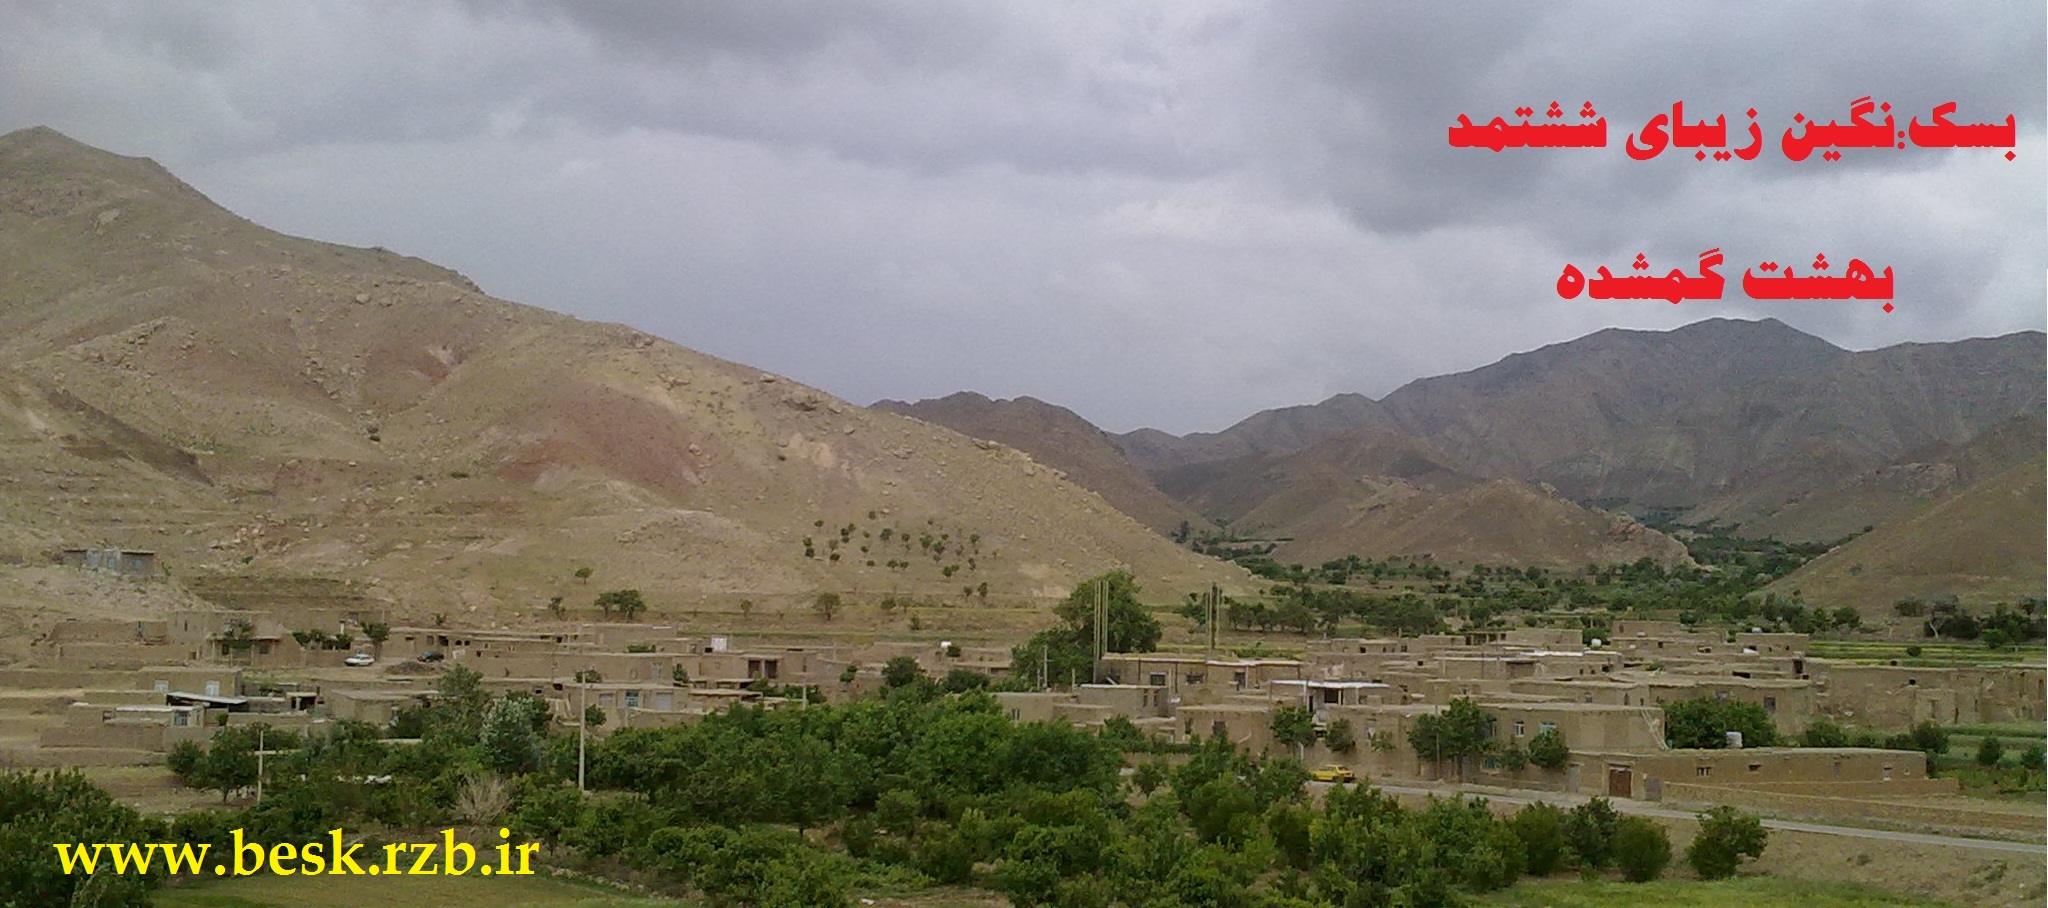 روستای بسک نگیین زیبای ششتمد